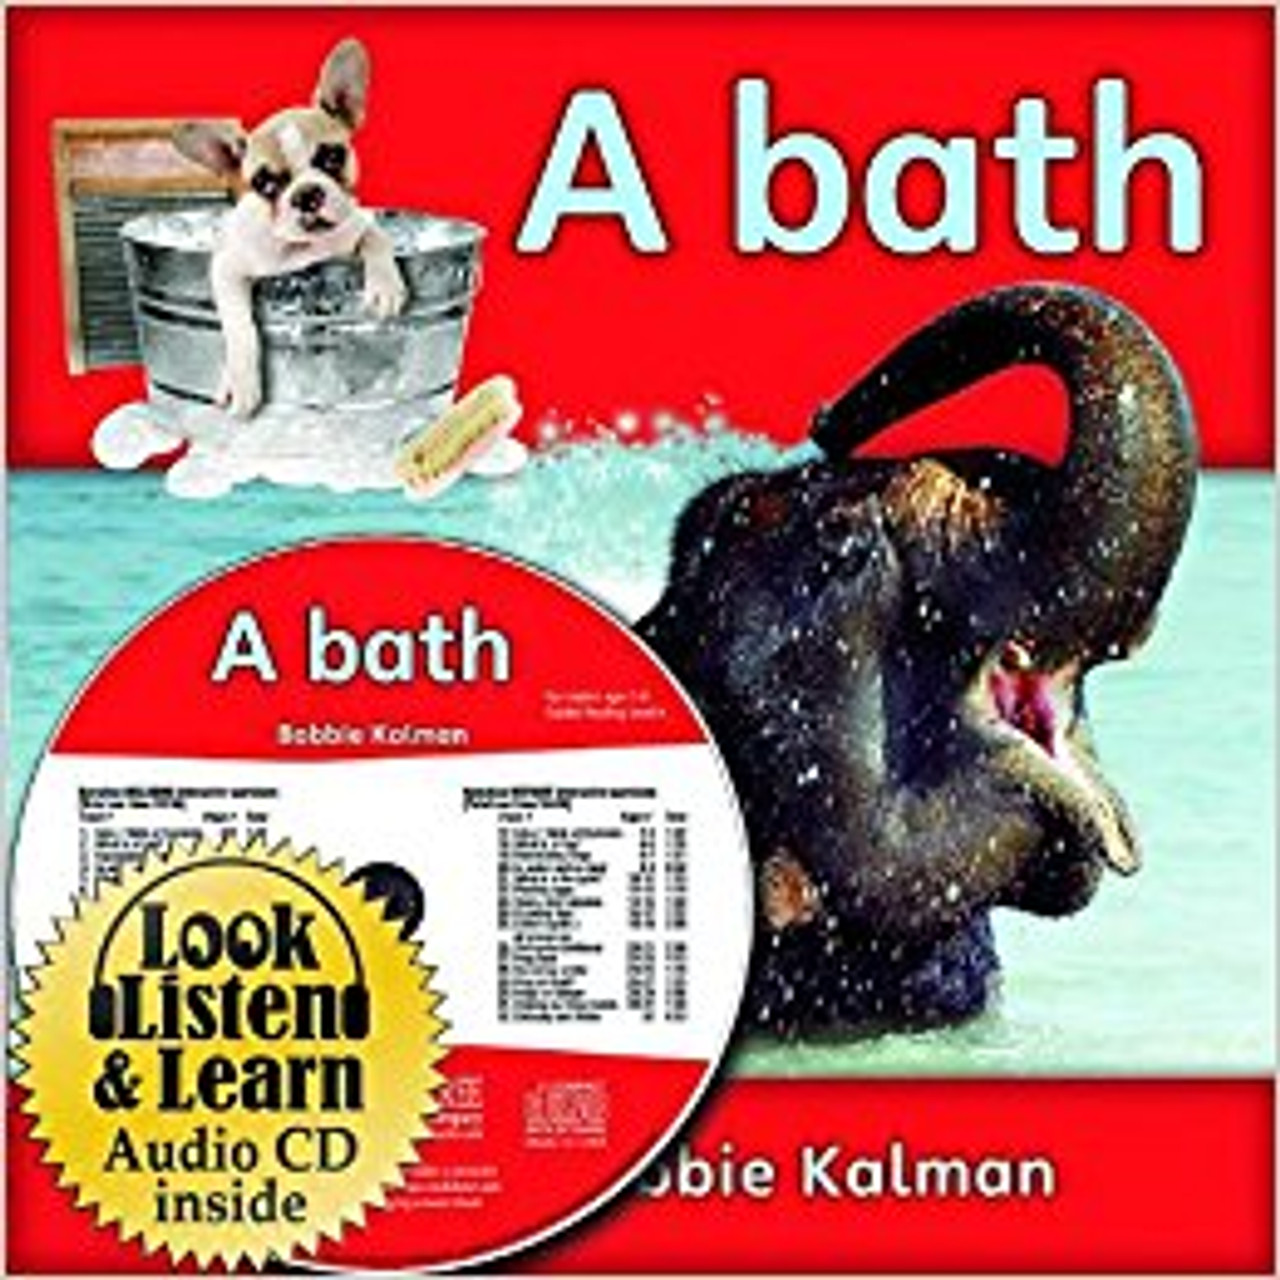 A Bath (With CD) by Bobbie Kalman